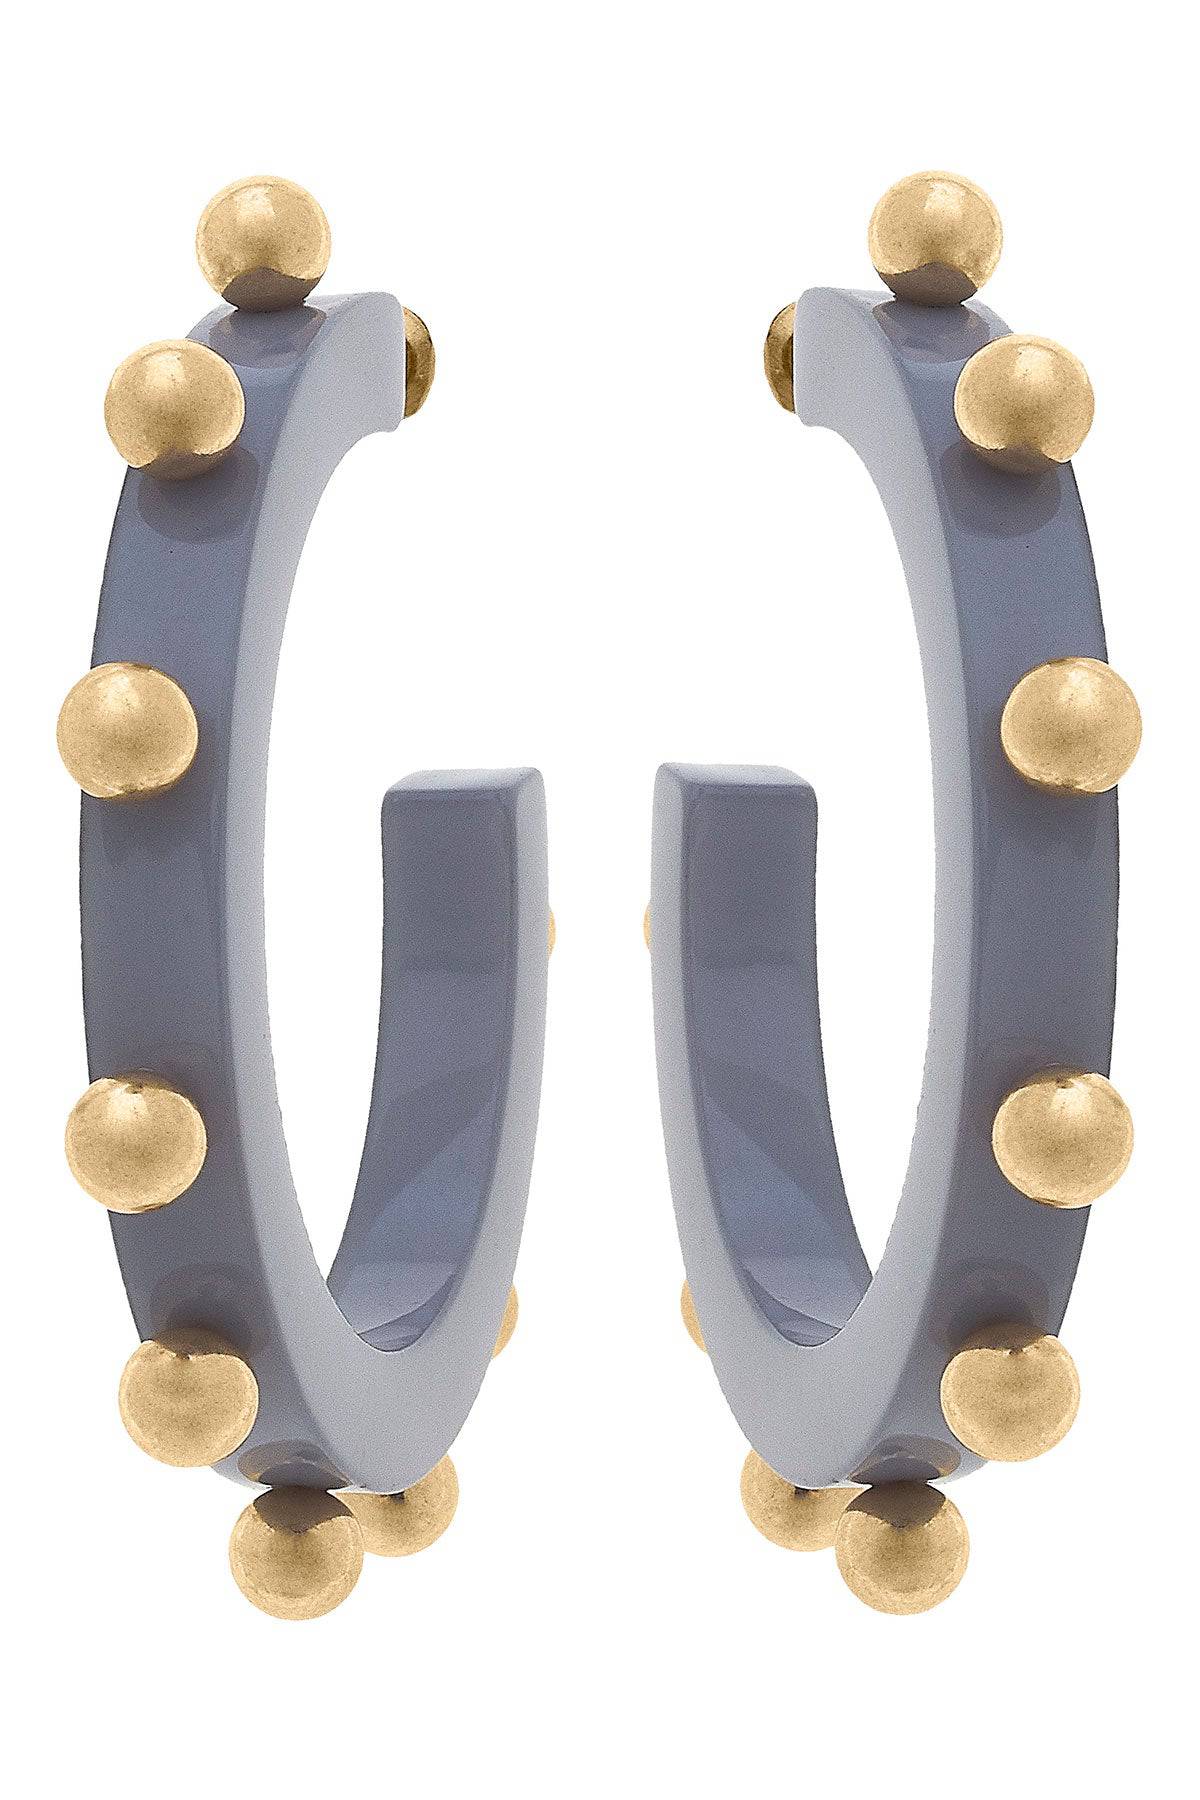 Kelley Studded Metal and Resin Hoop Earrings in Gray - Findlay Rowe Designs